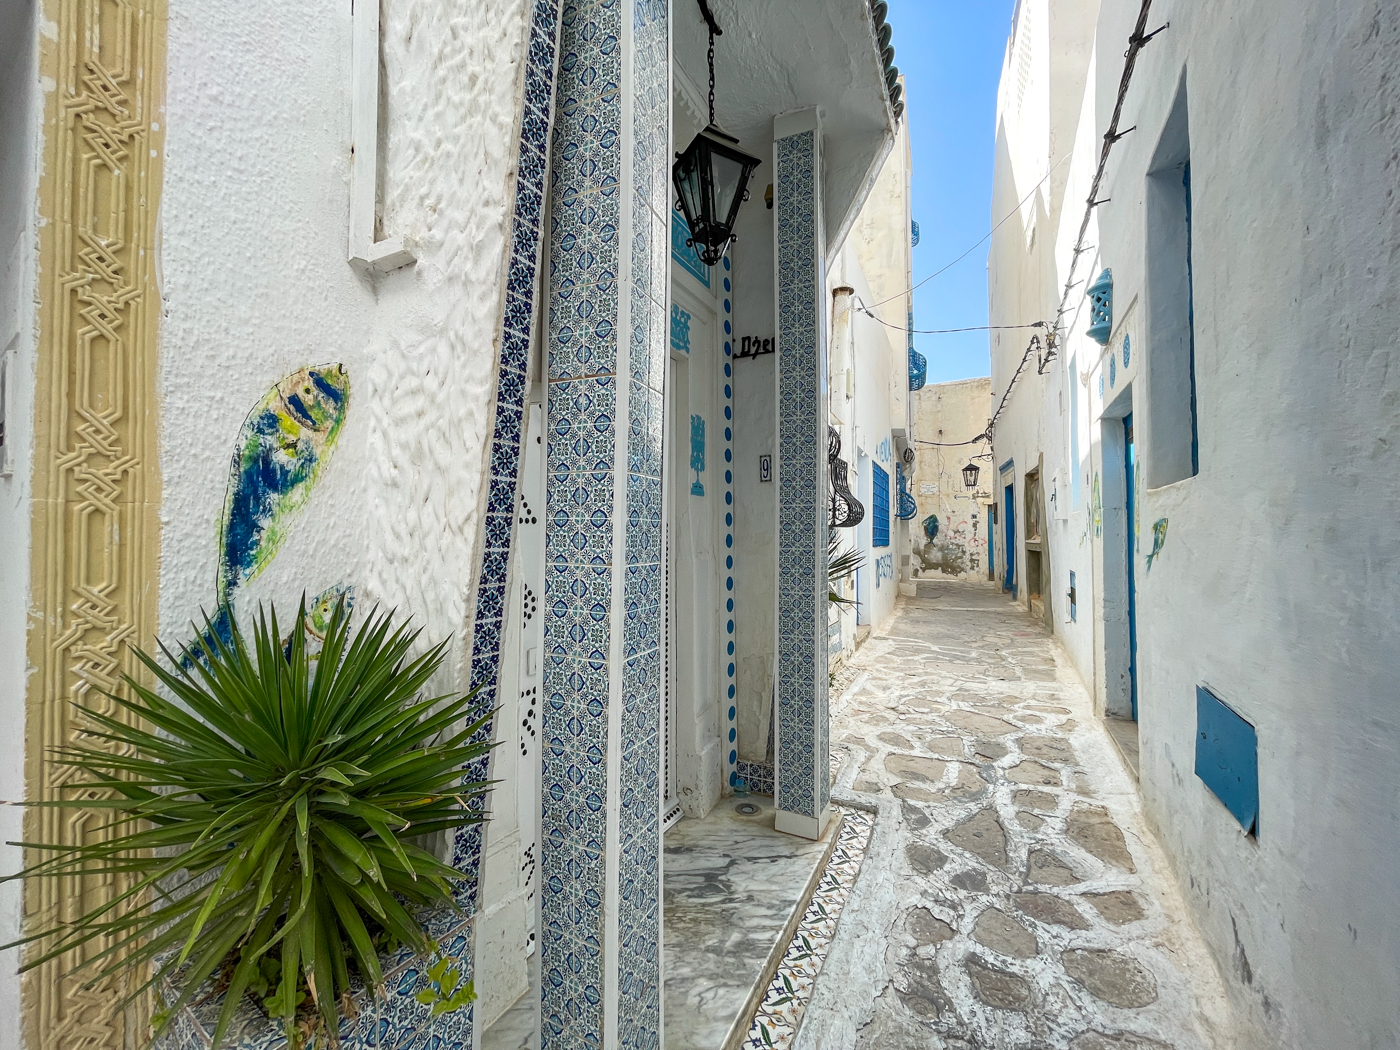 Poissons de street art - Hammamet en Tunisie